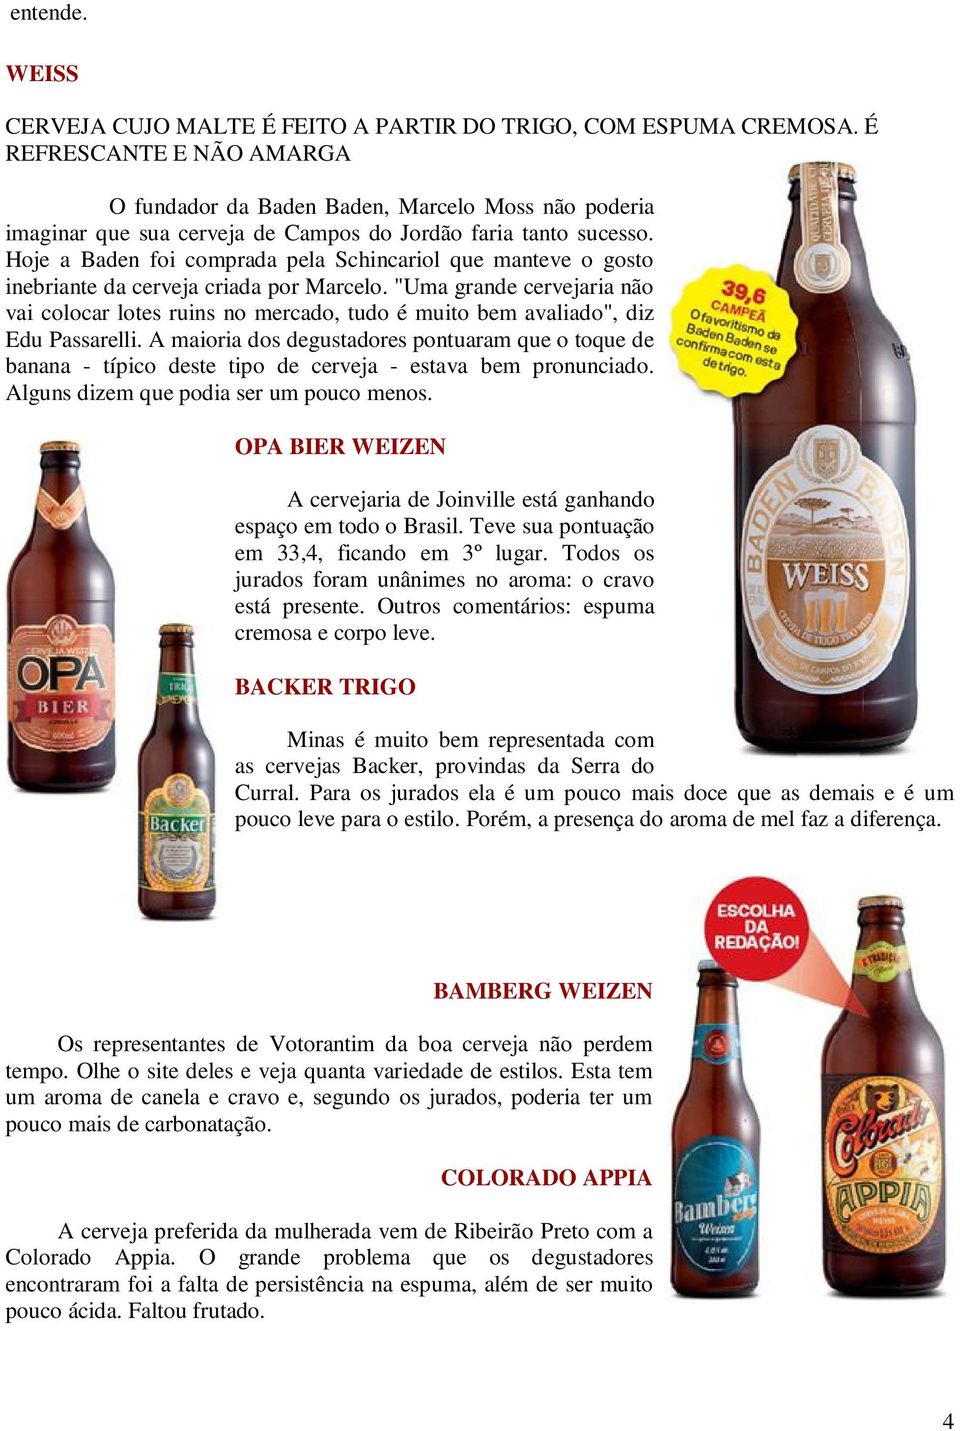 Hoje a Baden foi comprada pela Schincariol que manteve o gosto inebriante da cerveja criada por Marcelo.